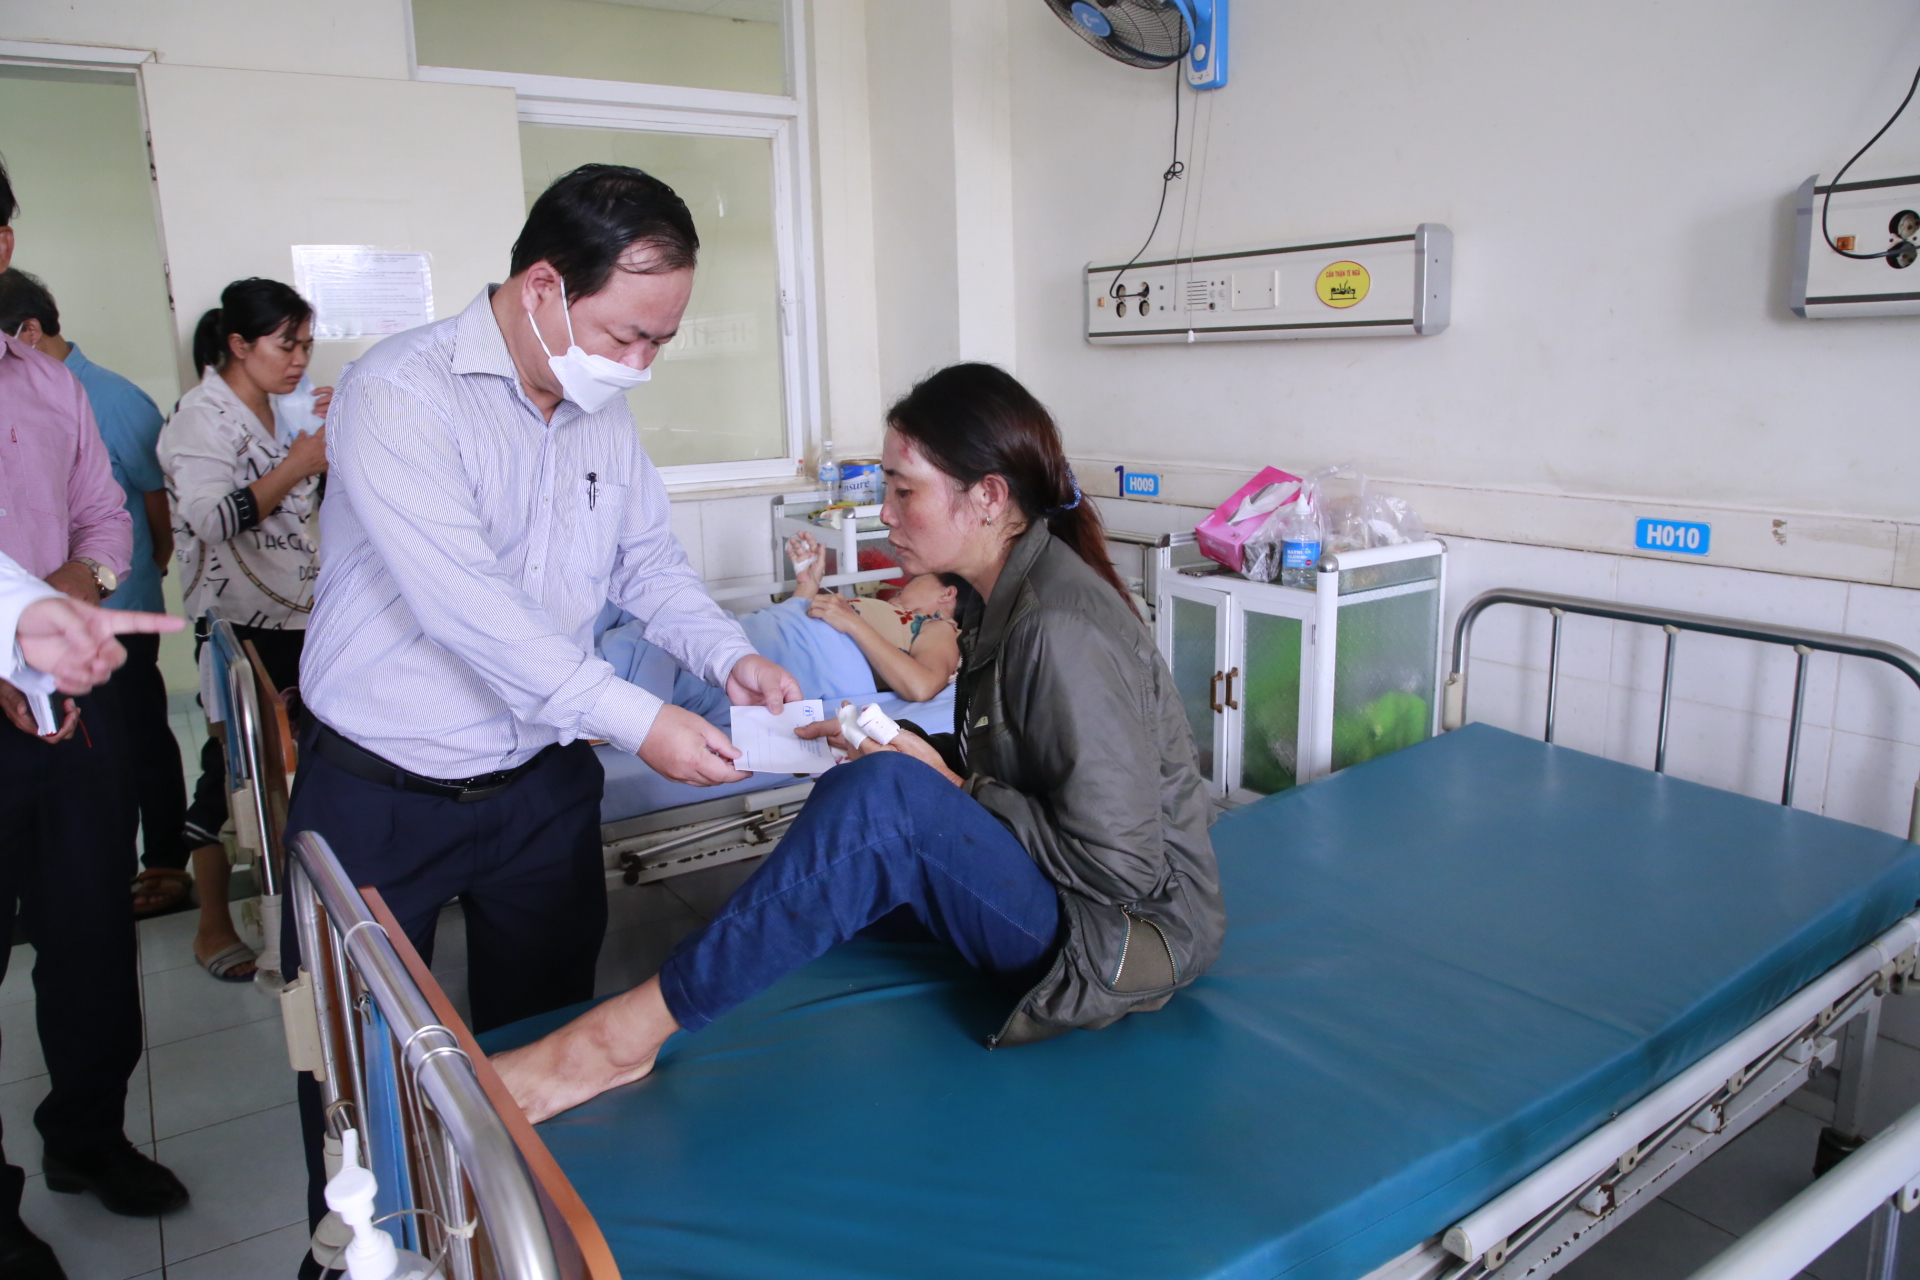 Ông Nguyễn Hồng Quang - Phó chủ tịch UBND tỉnh Quảng Nam đến thăm, hỗ trợ cho những người bị nạn đang điều trị tại bệnh viện Đa khoa Trung ương Quảng Nam